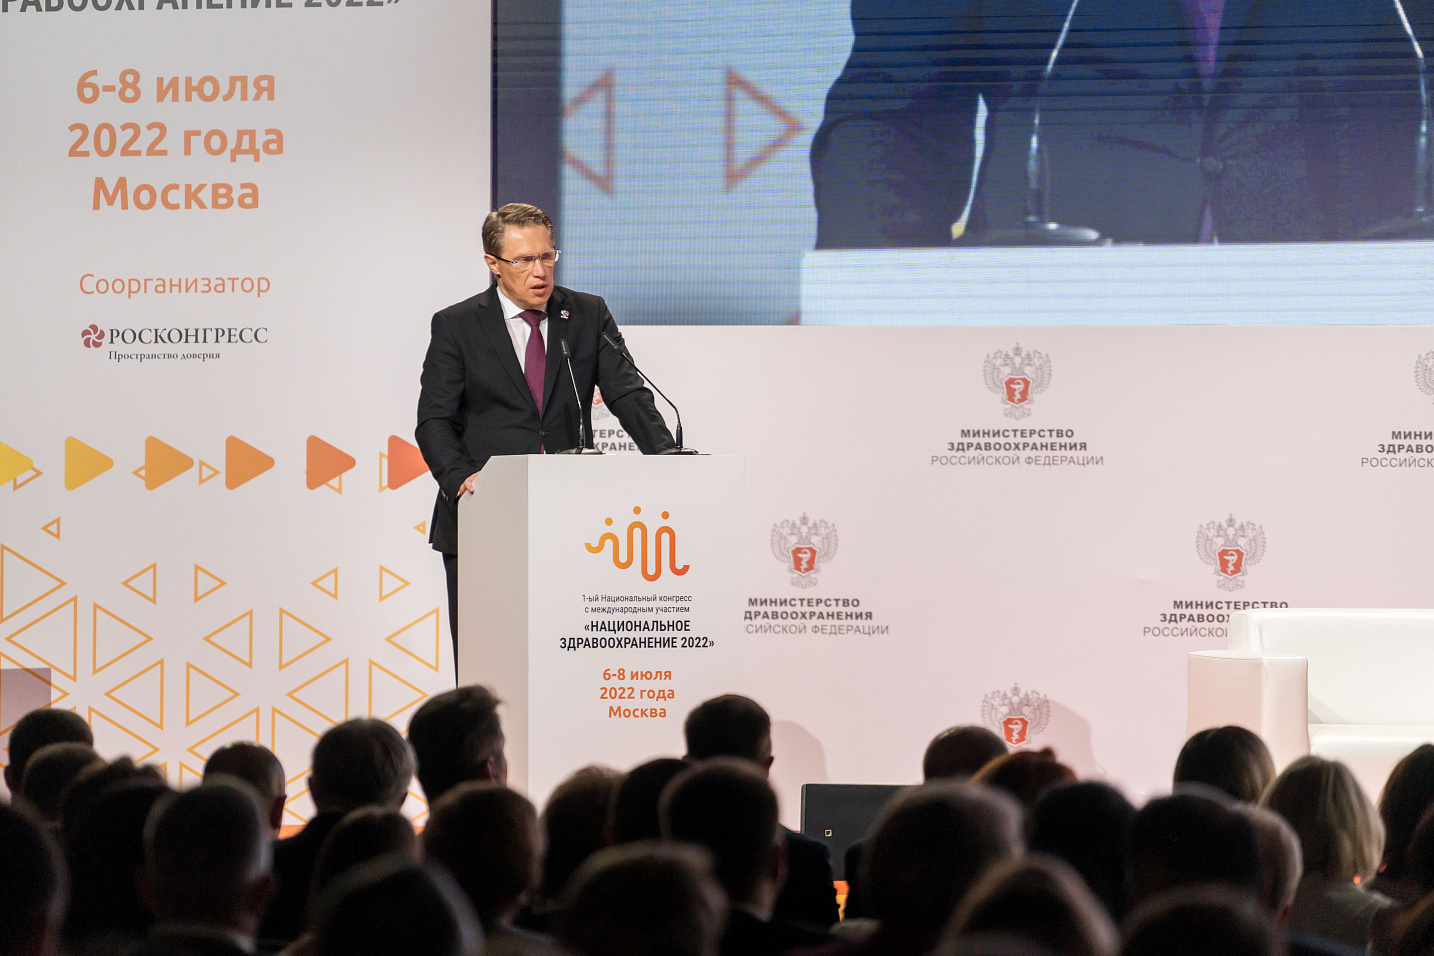 1-й Национальный конгресс с международным участием «Национальное здравоохранение 2022» начал свою работу в Москве